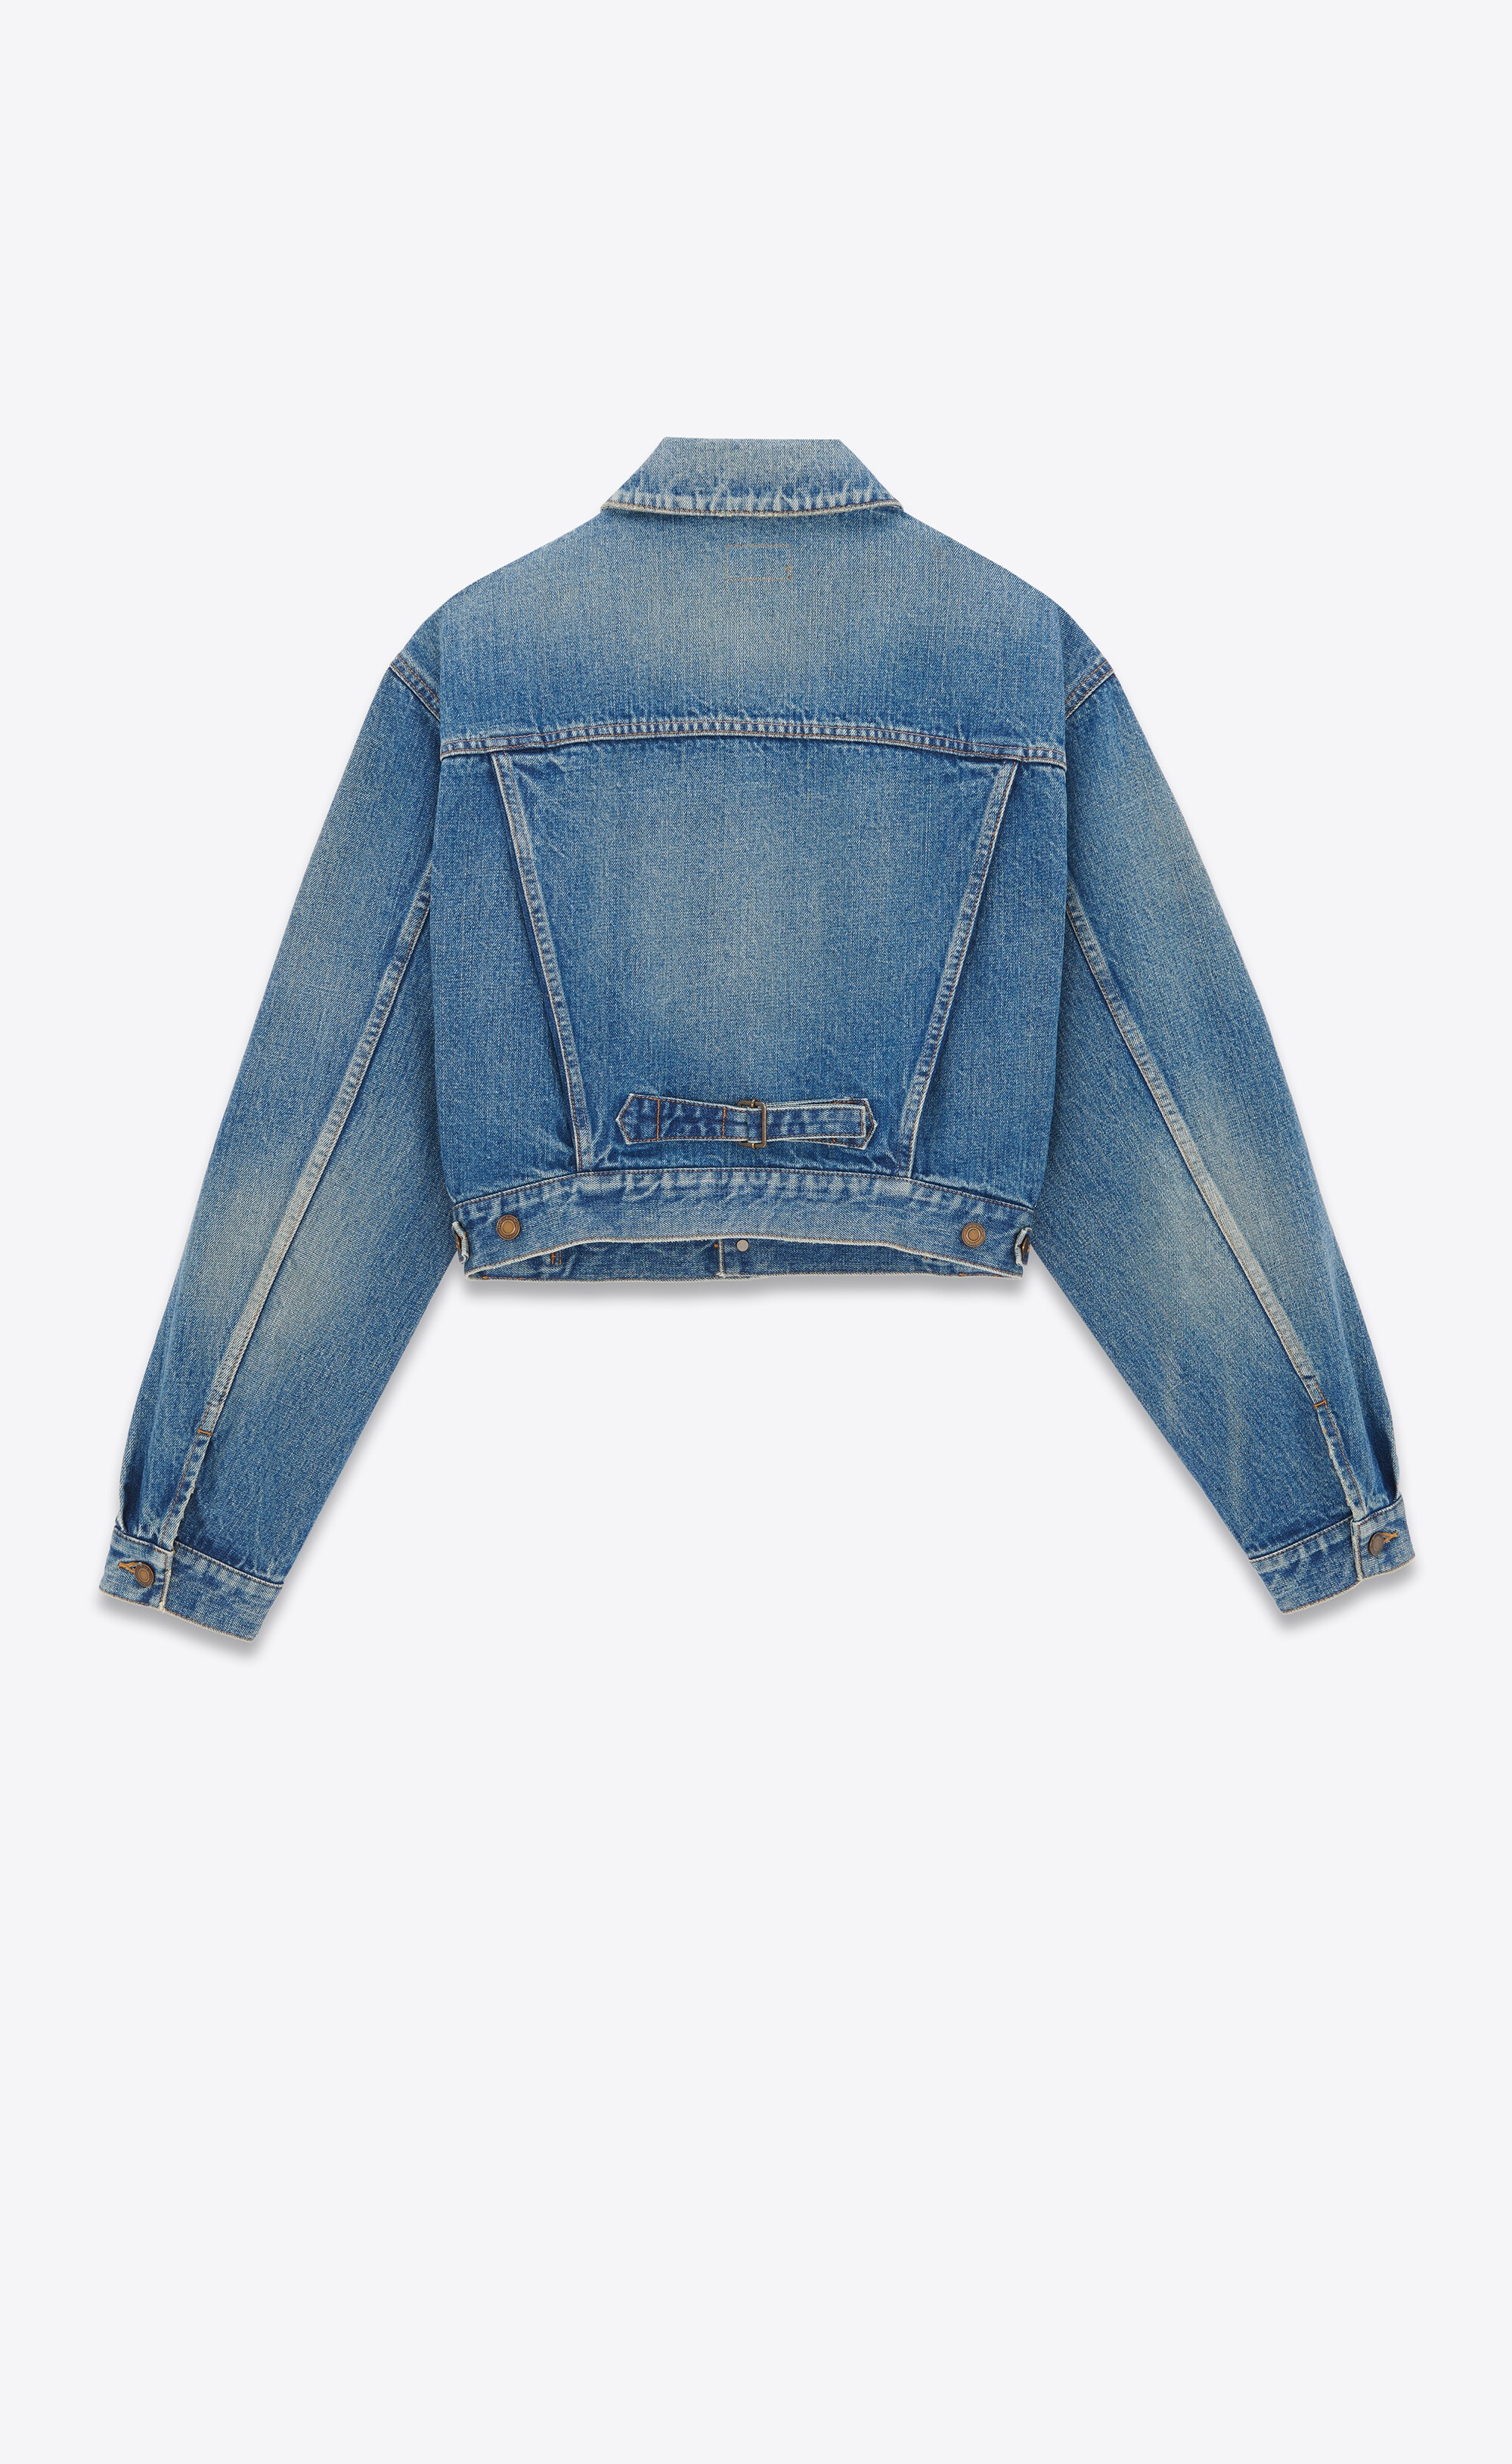 80's jacket in vintage blue denim - 2